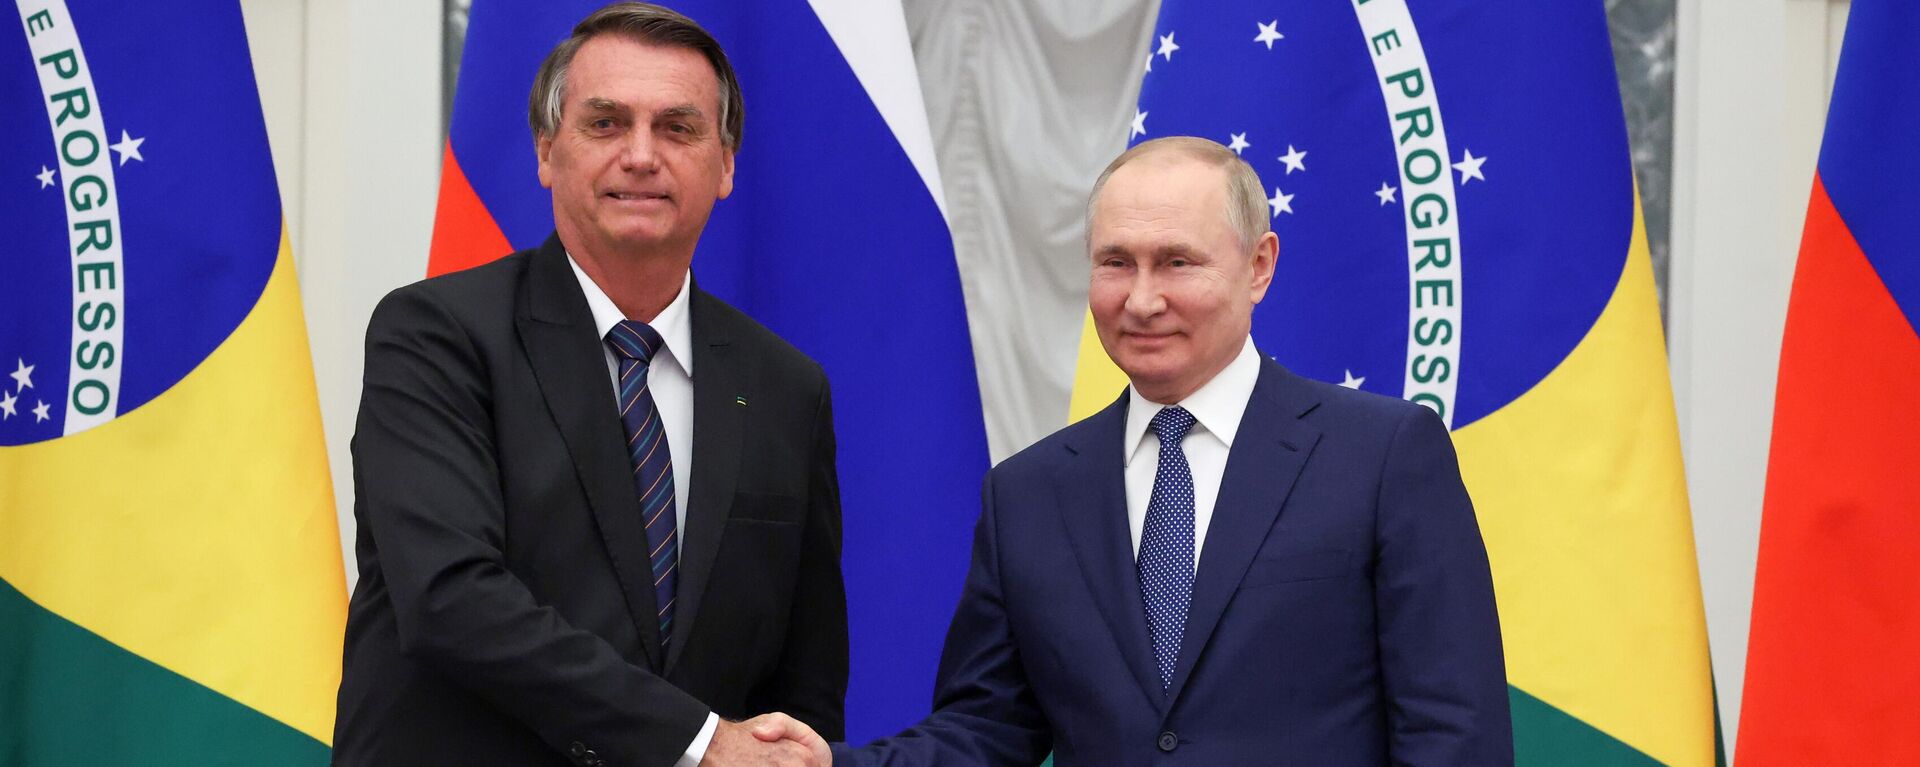 Jair Bolsonaro e Vladimir Putin, presidentes do Brasil e da Rússia, respectivamente, após encontro oficial no Kremlin, Moscou, Rússia, 16 de fevereiro de 2022 - Sputnik Brasil, 1920, 16.02.2022